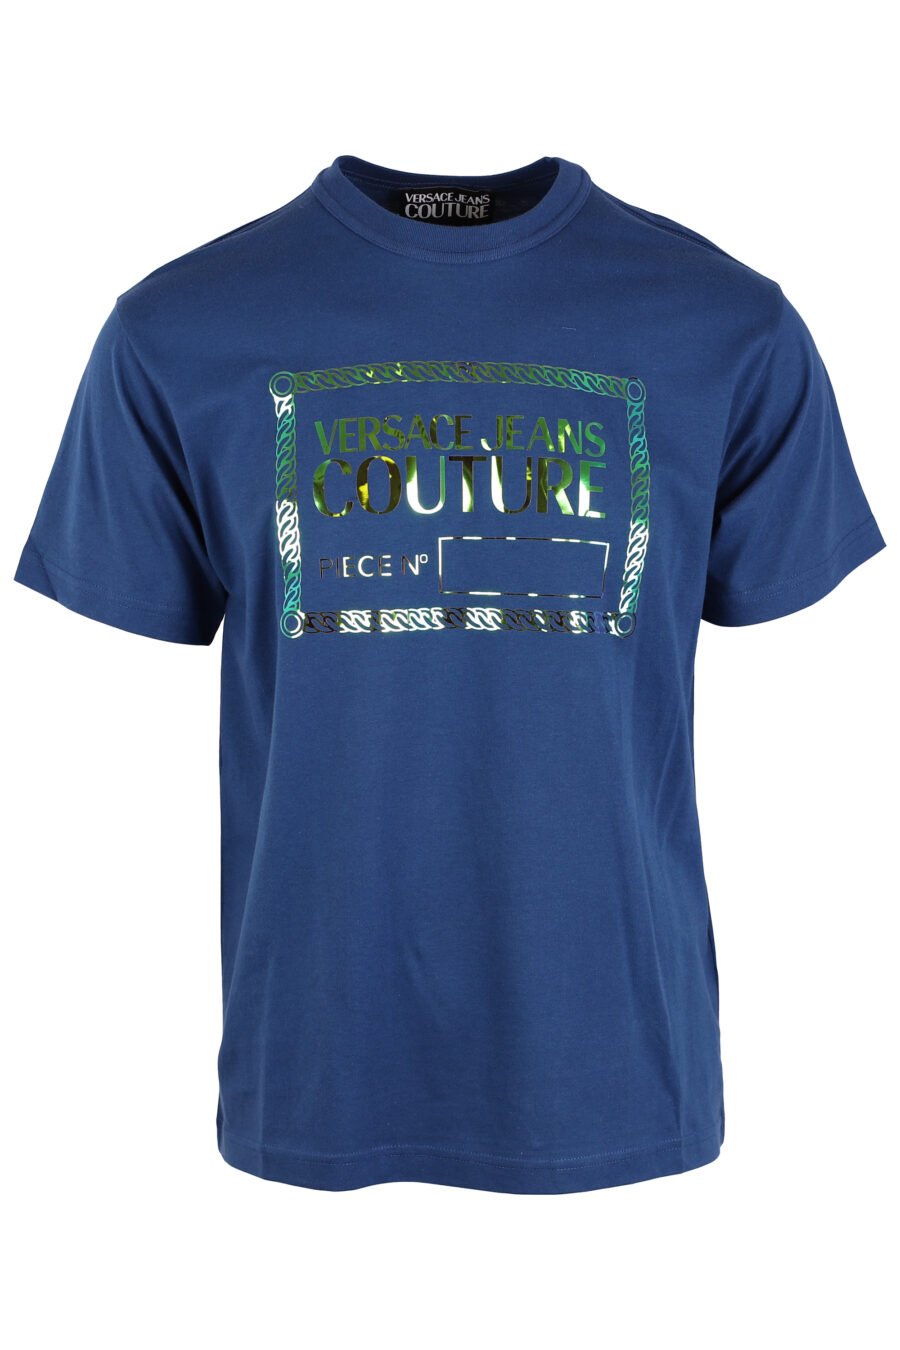 T-shirt azul-marinho com logótipo central em forma de tornassol verde - IMG 4036